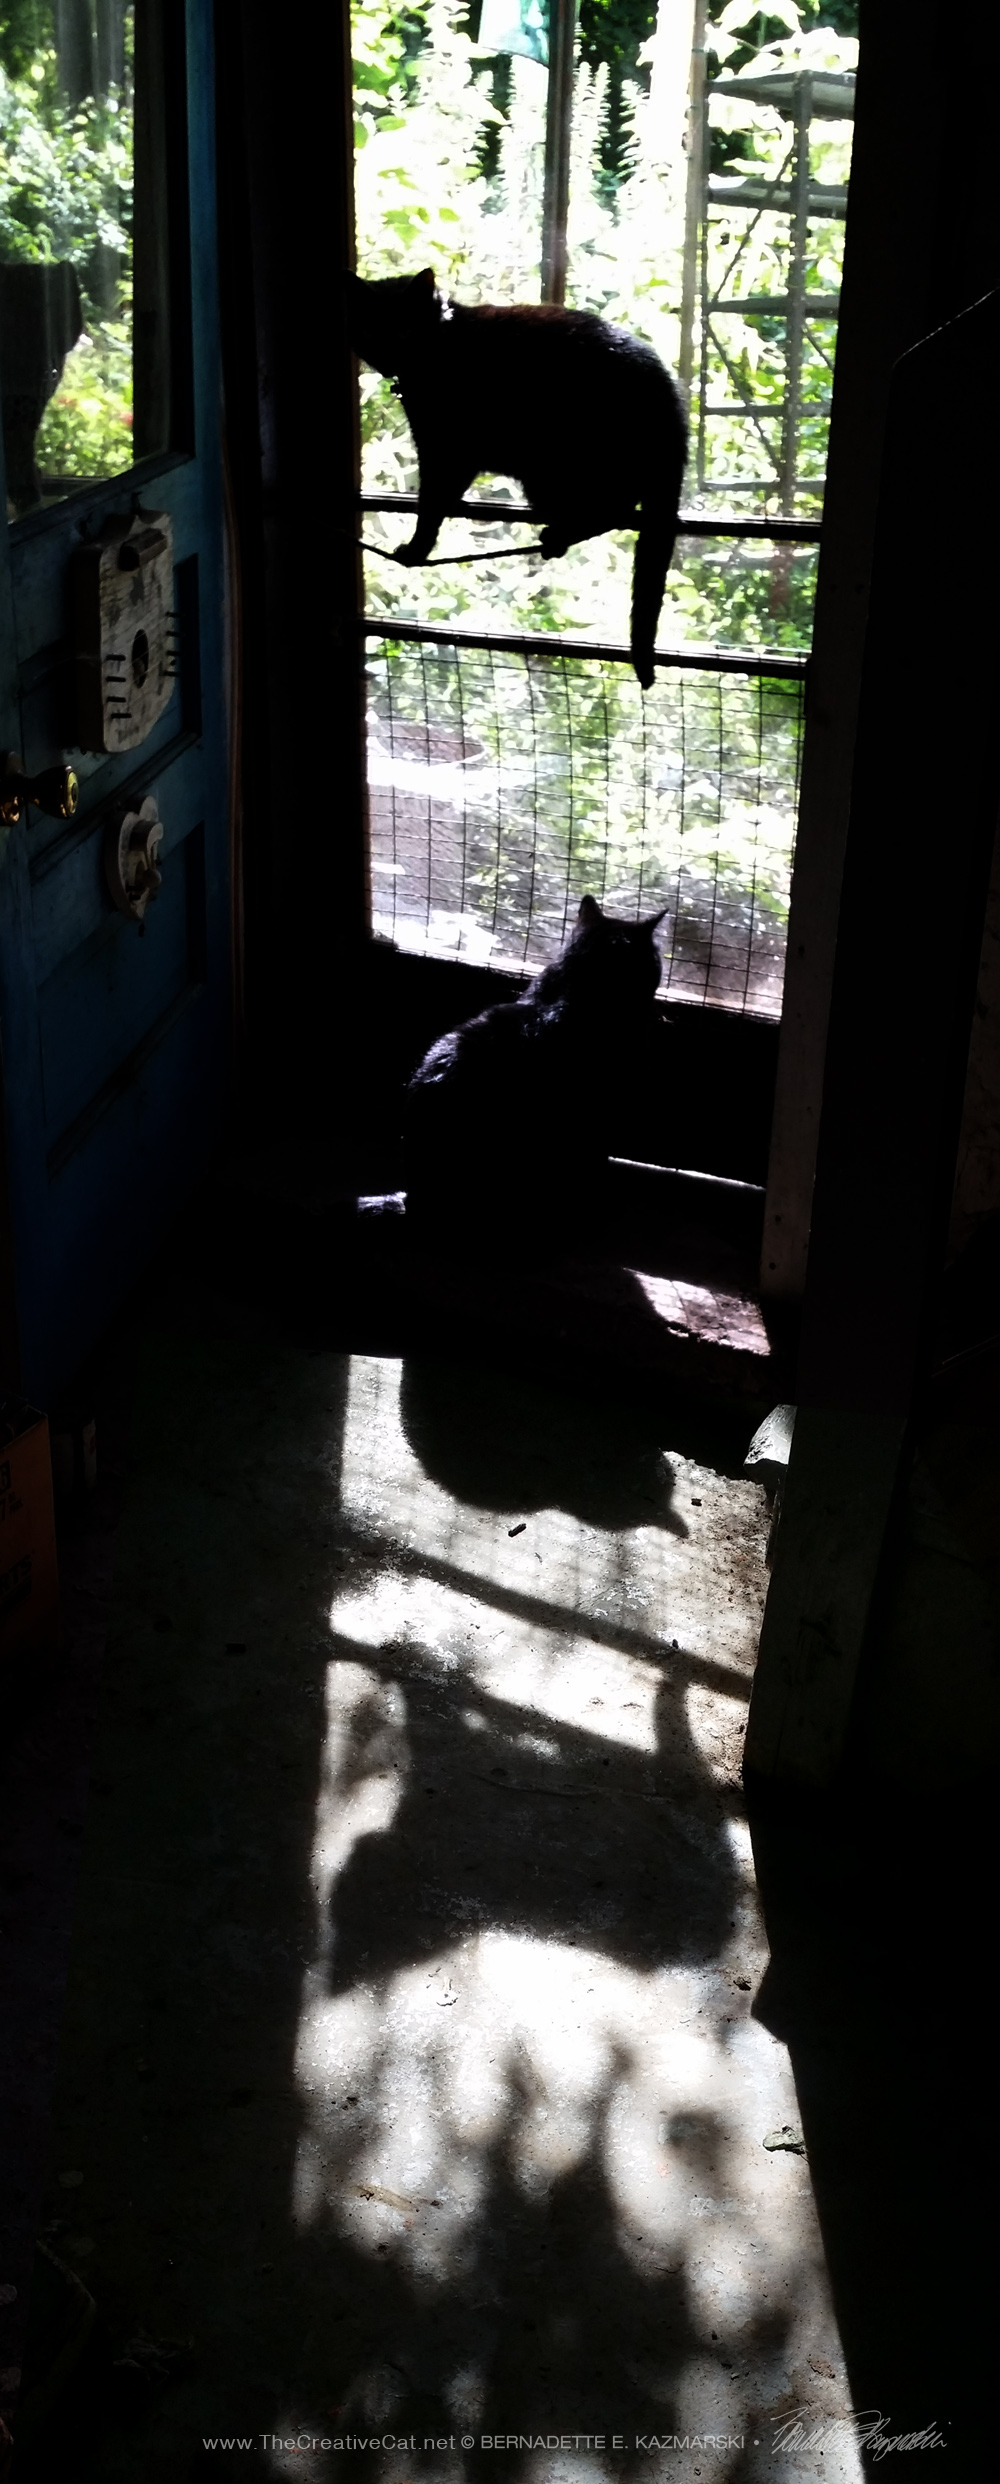 cats and shadows at door